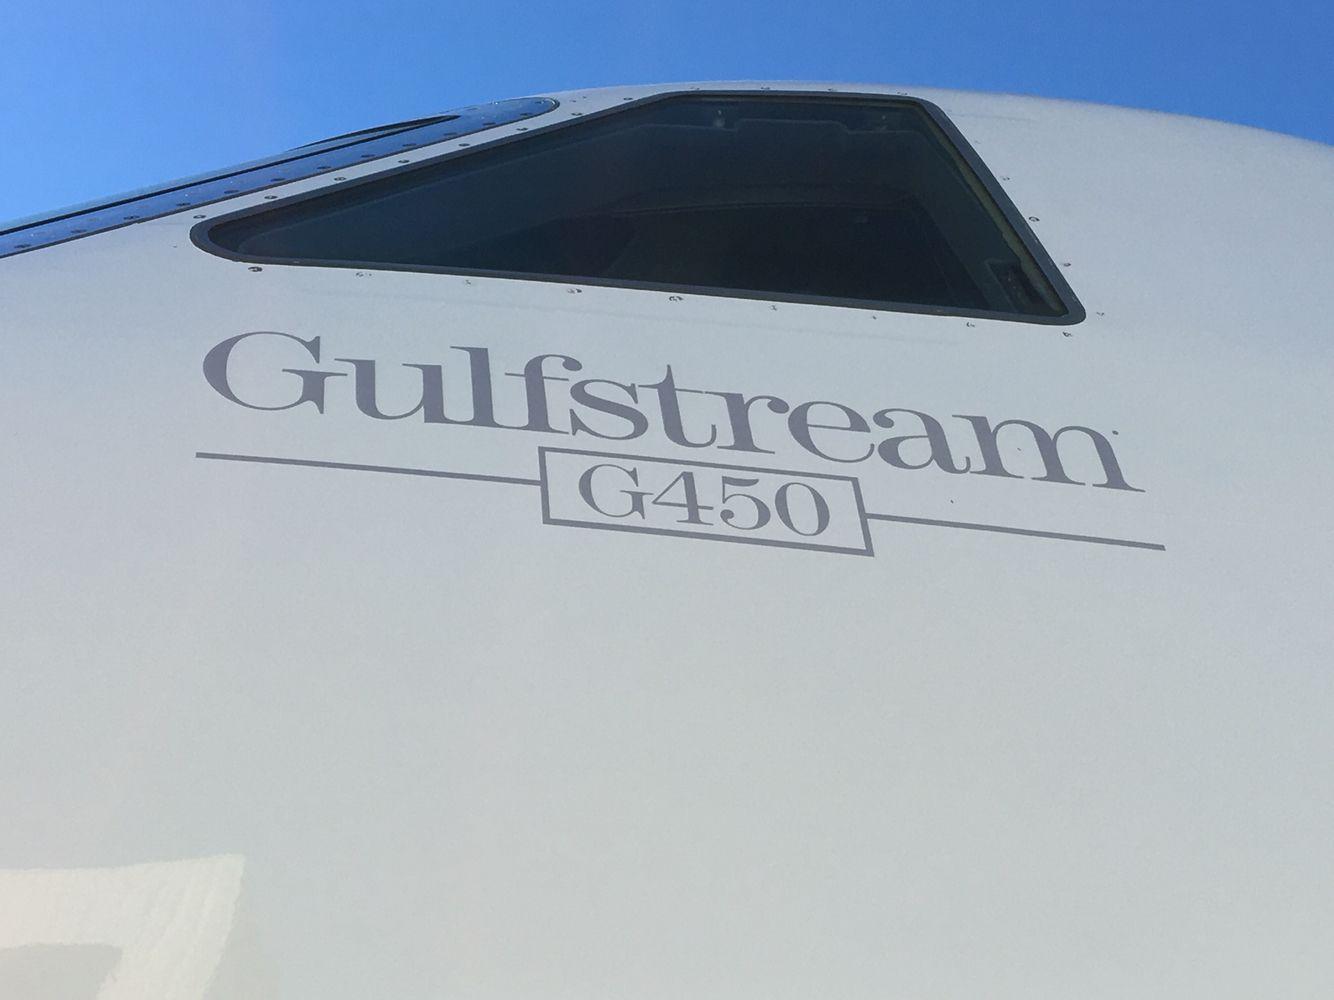 Gulfstream Logo - Gulfstream G450 logo | Gulfstream G450 | Plane, Logos